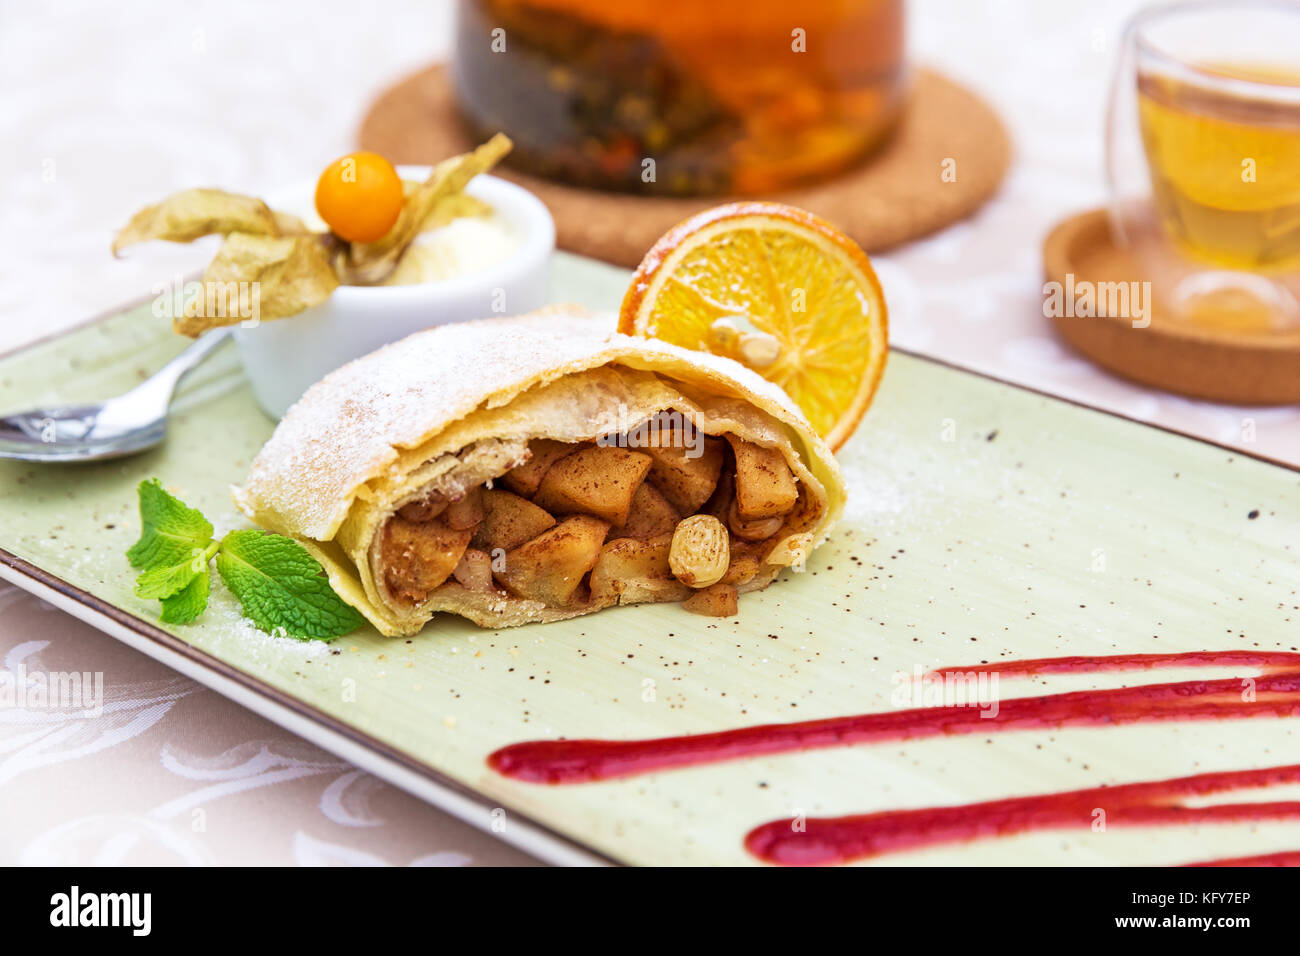 Strudel di mele fatto in casa con zucchero in polvere, gelato alla vaniglia e foglie di menta Foto Stock